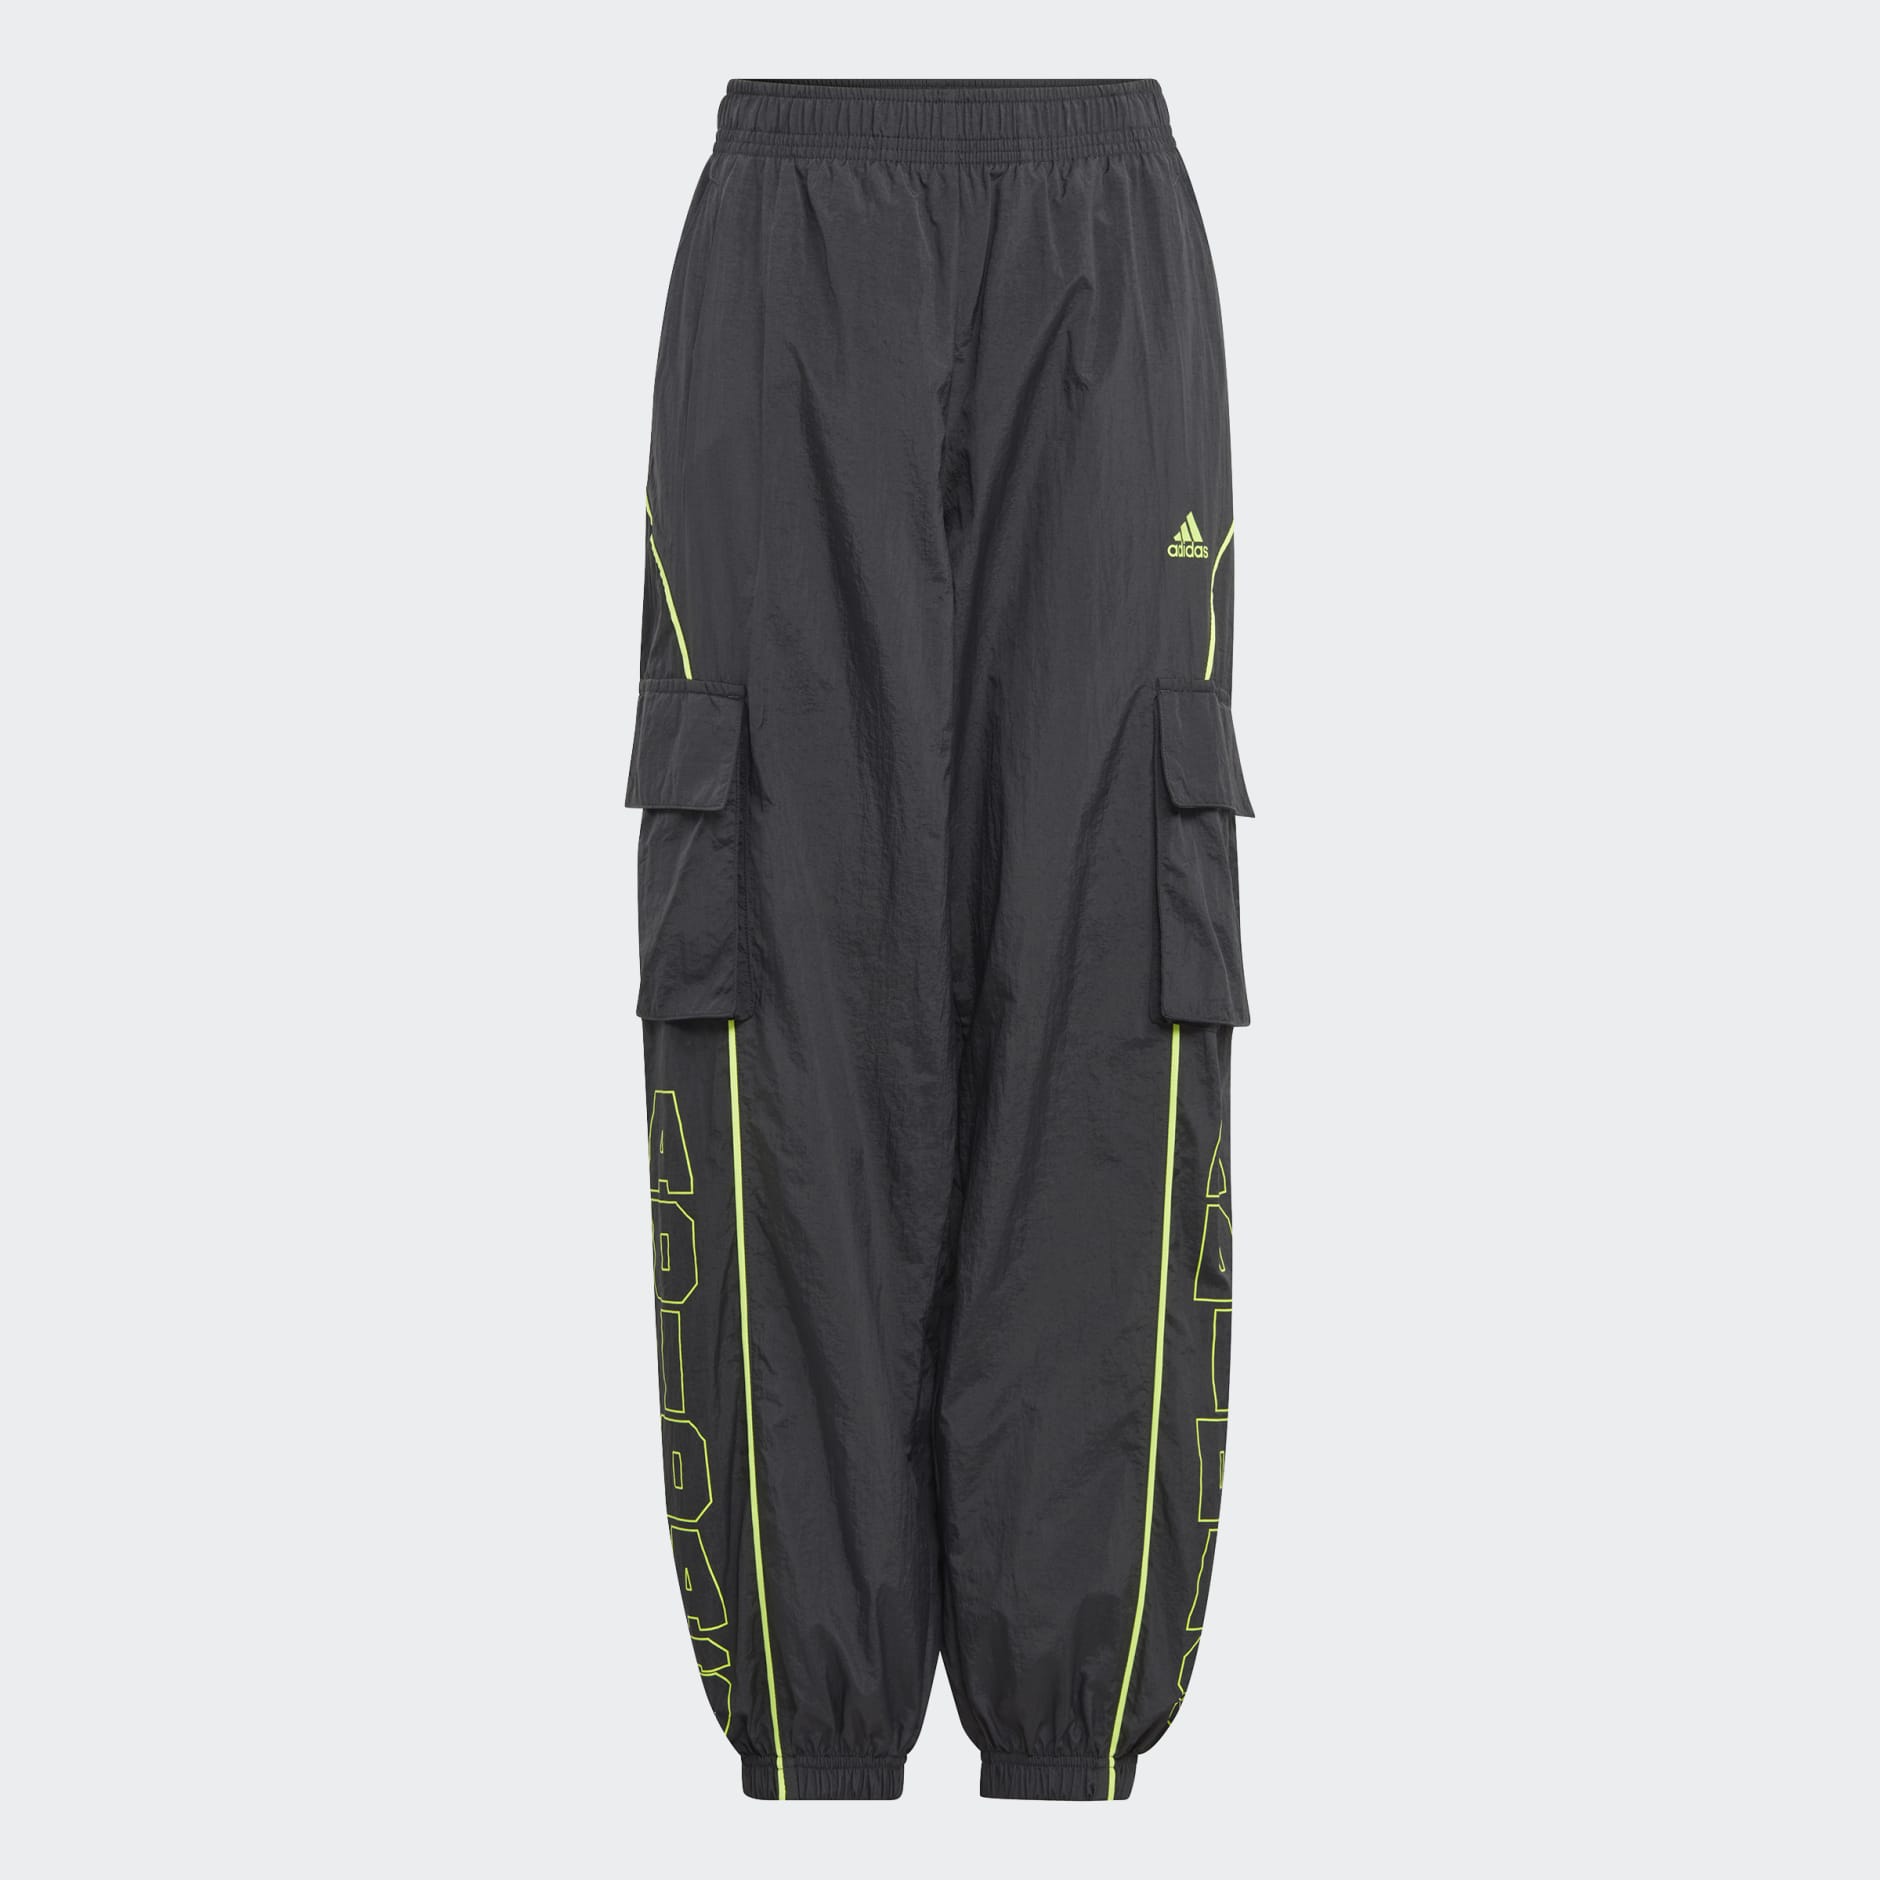 Nike Sportswear Women's Dance Cargo Pants / Black